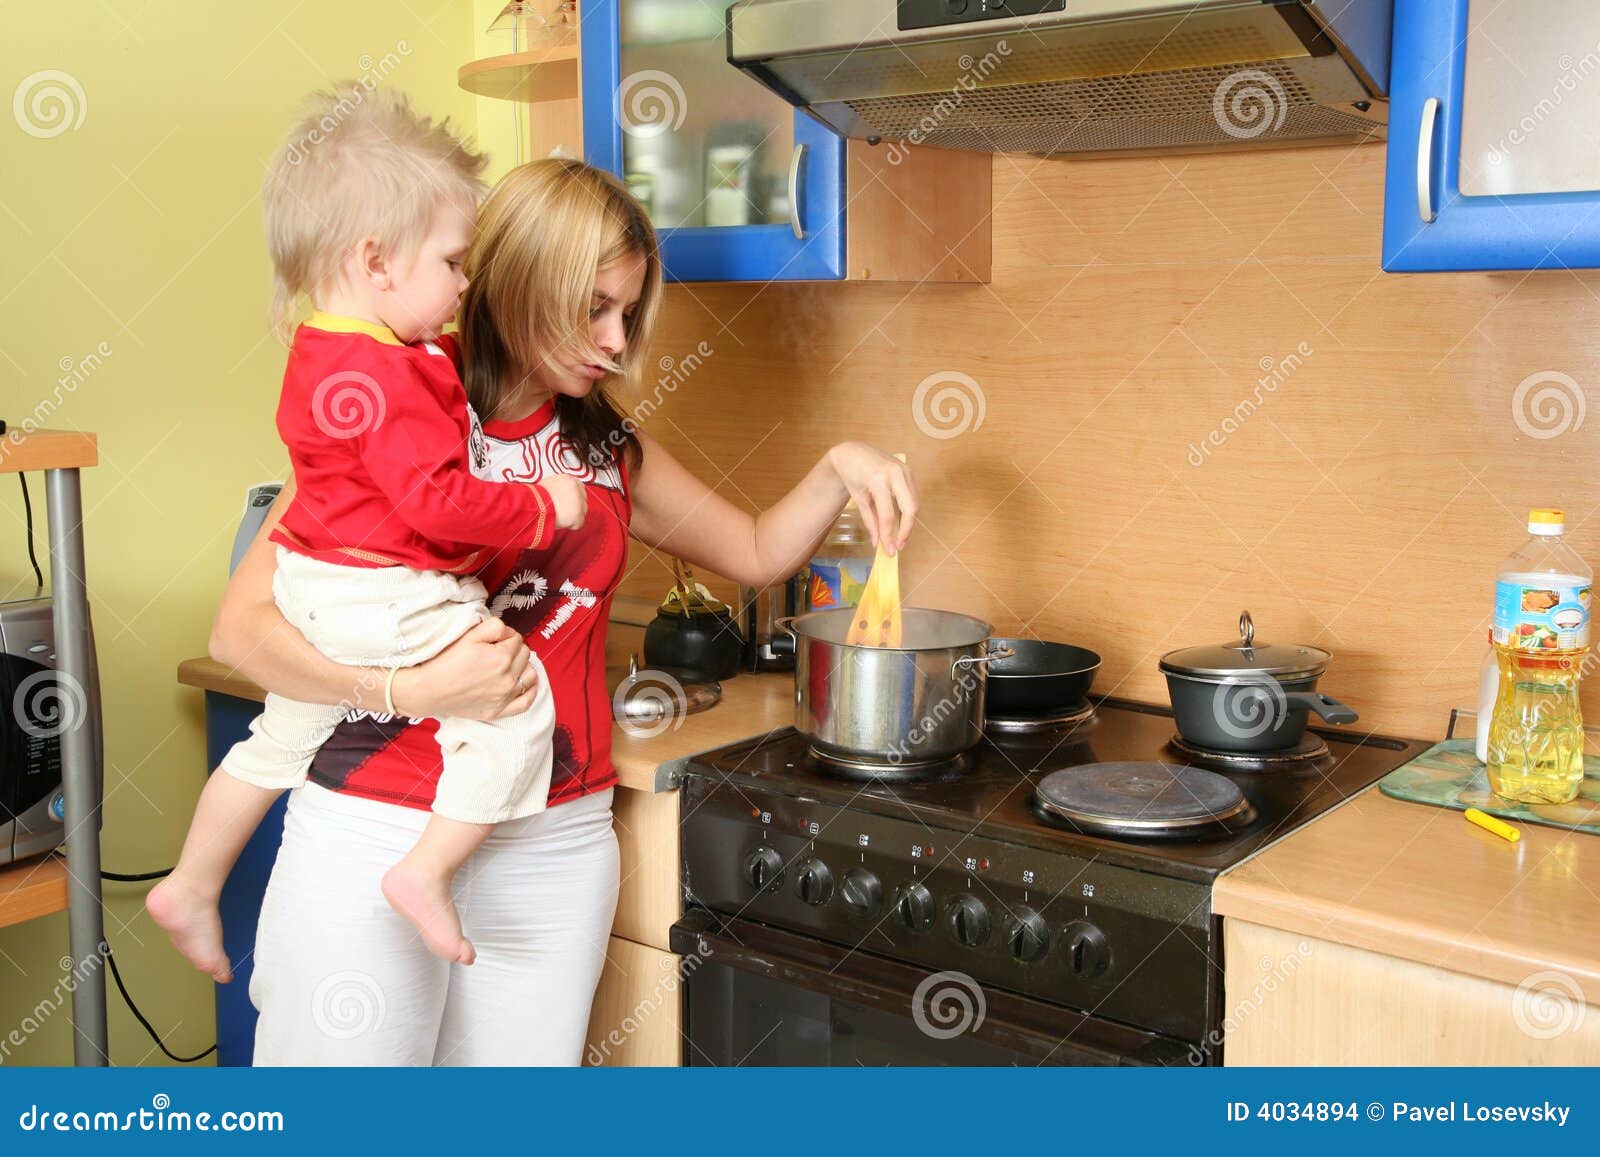 Кухня для детей. Мама с ребенком на кухне. Фотосессия мама и дети на кухне. Женщина с ребенком на кухне. Приходит сын на кухню